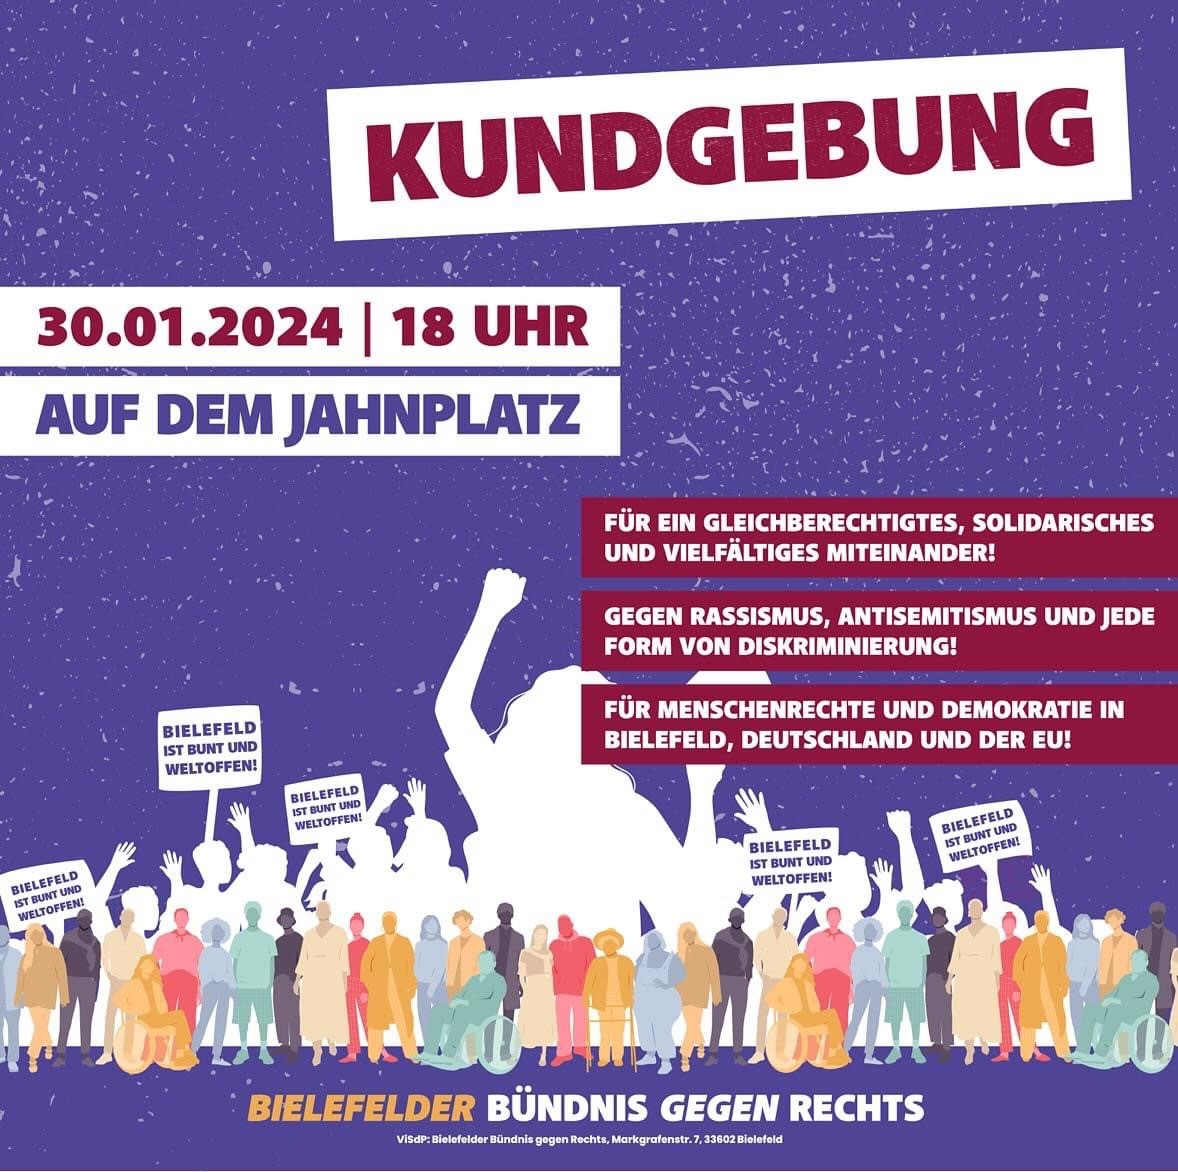 Aufruf zur Kundgebung „Solidarischer Zusammenhalt statt rechtem Populismus, Rassismus und Antisemitismus“